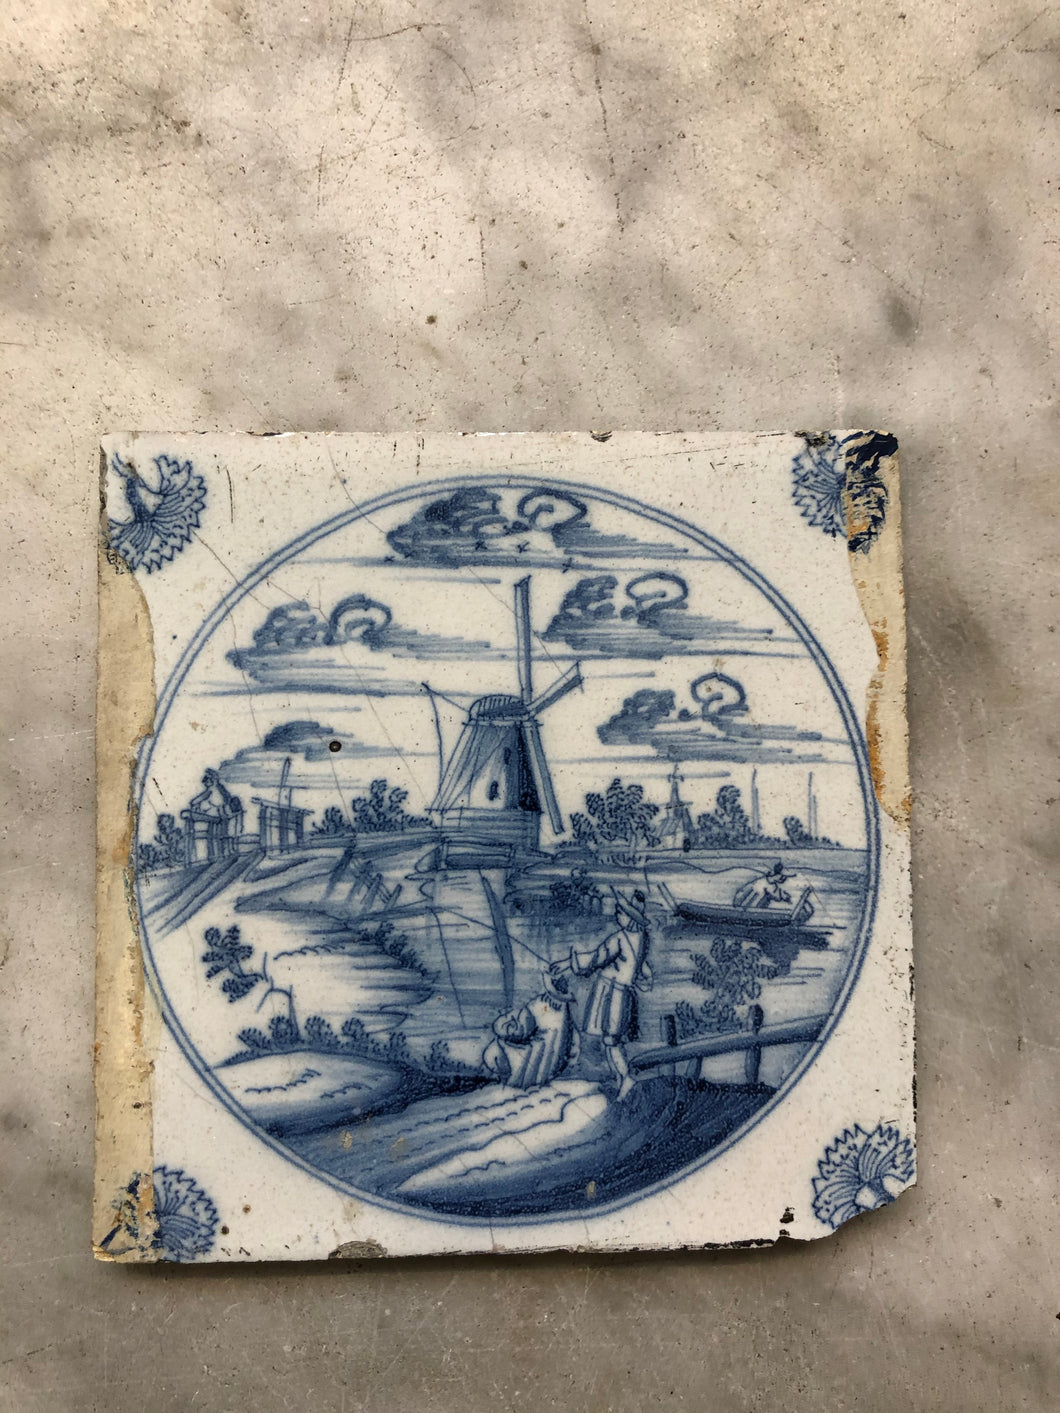 18th century Delft handpainted dutch tile with landscape